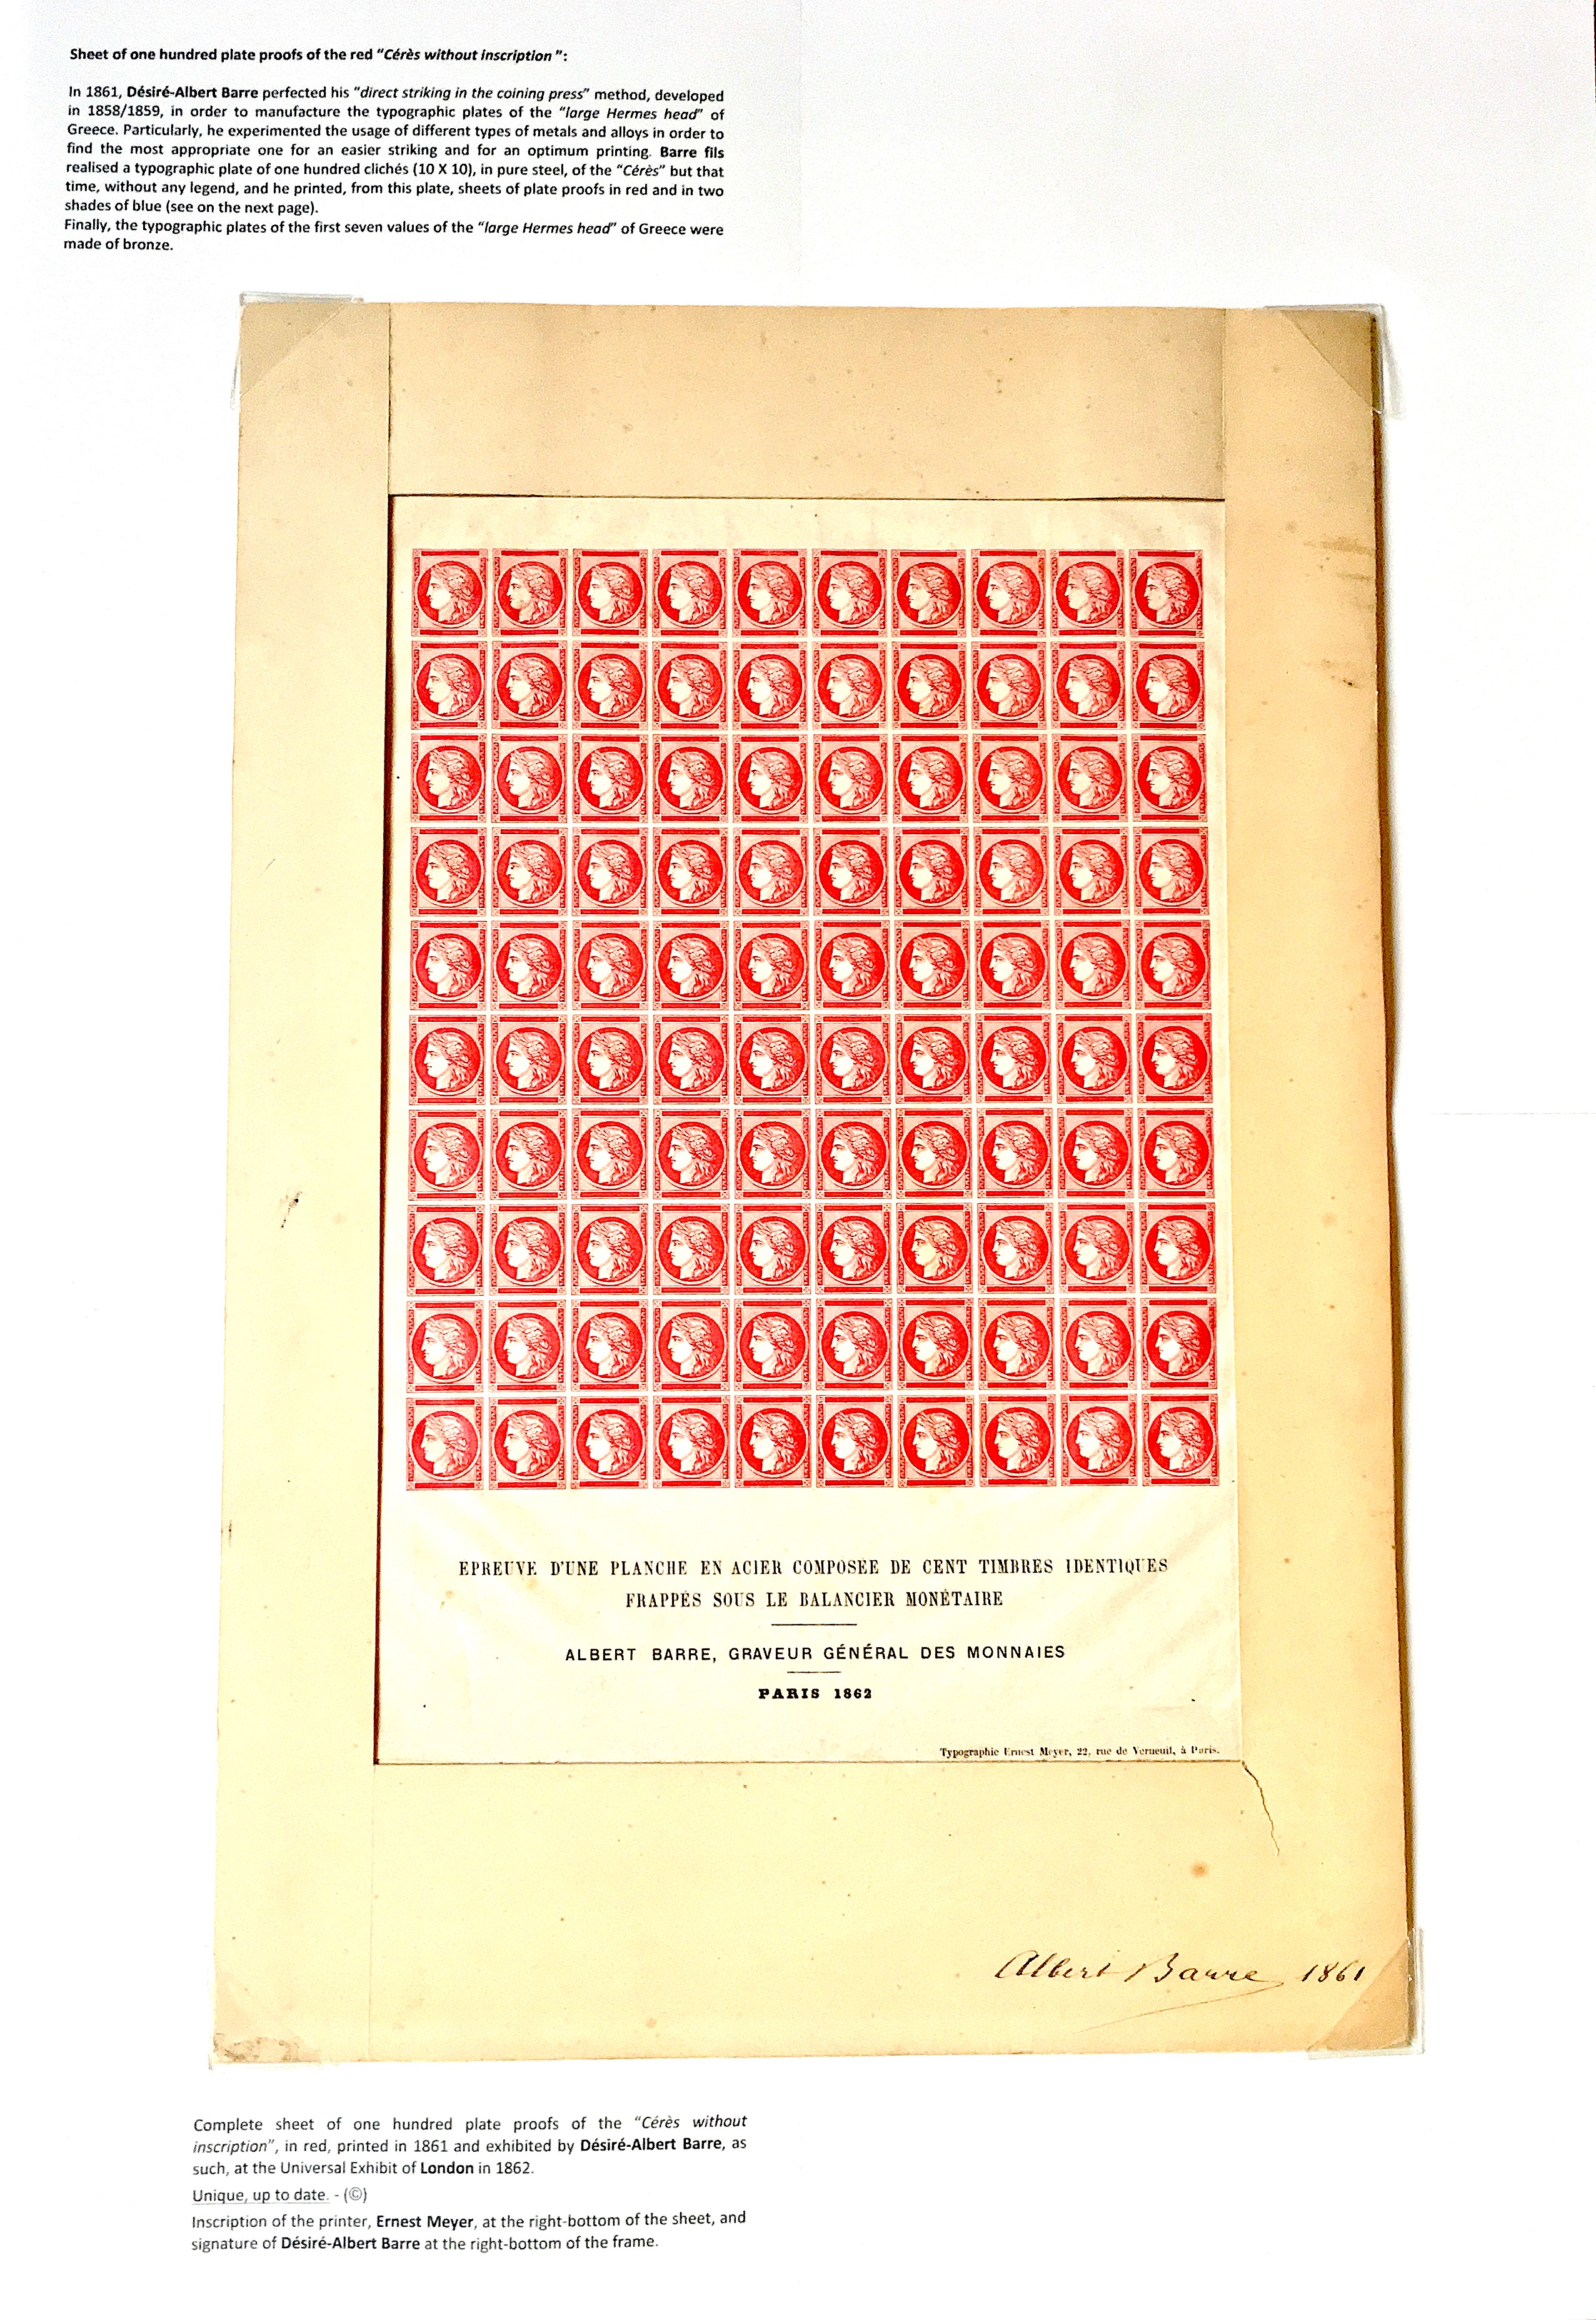 La fabrication et l���utilisation postale des tirages de Paris de la grosse t��te d���Herm��s de Gr��ce��� p. 5